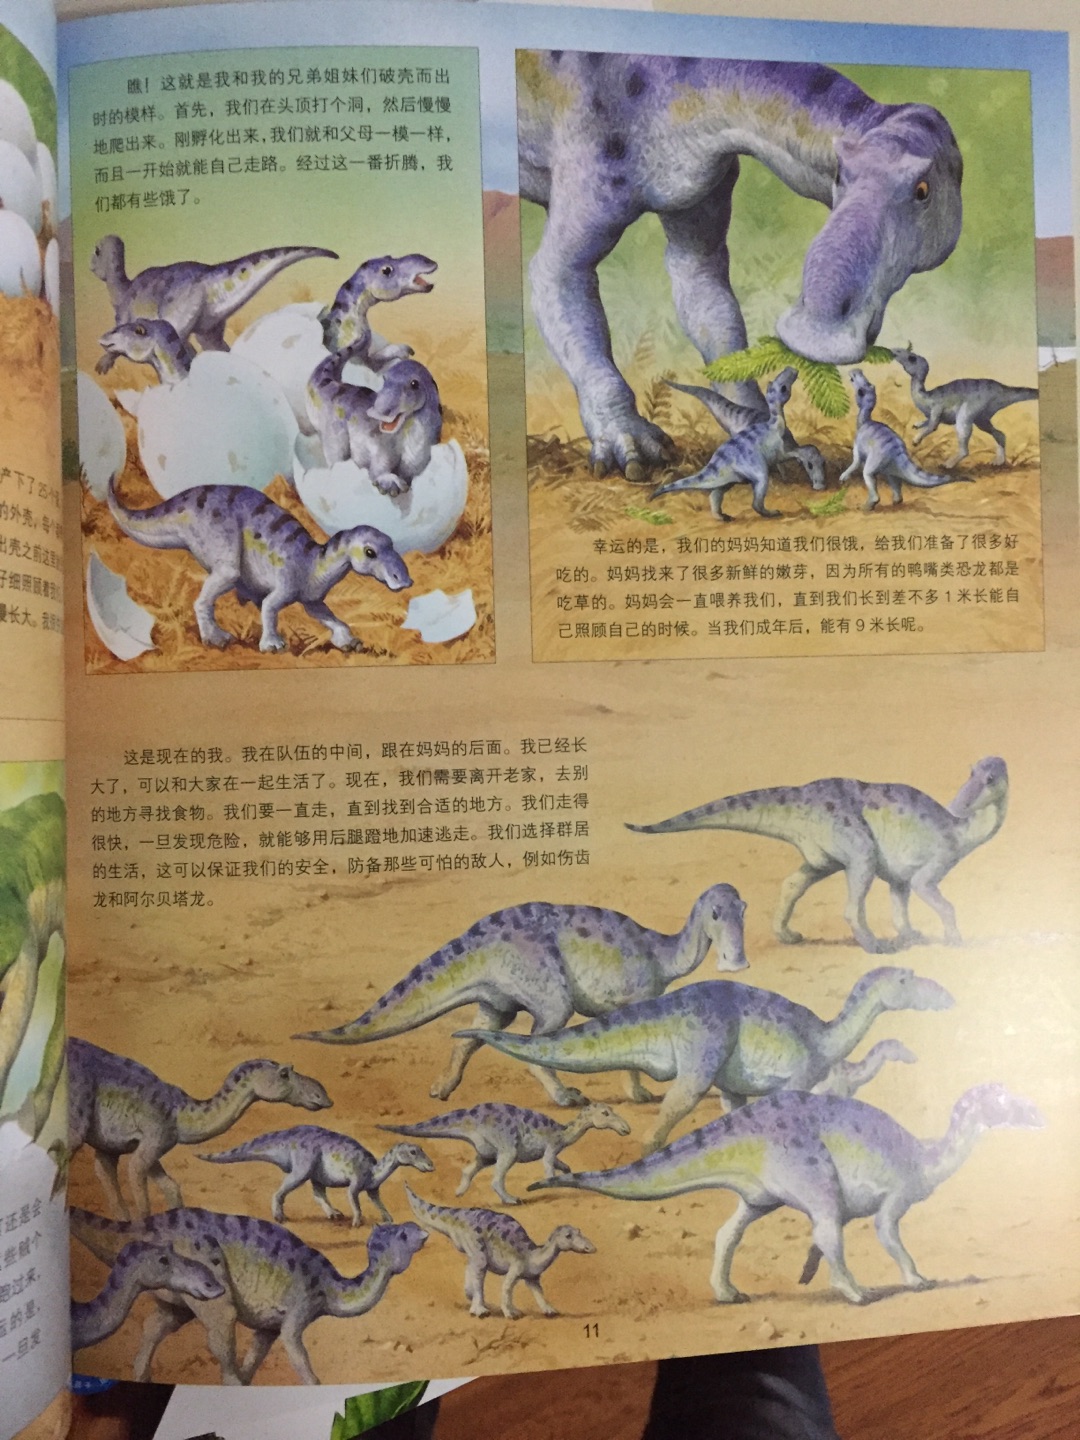 老师推荐的书，分为四个内容，海洋生物、昆虫、动物、恐龙，类似简单的十万个为什么。